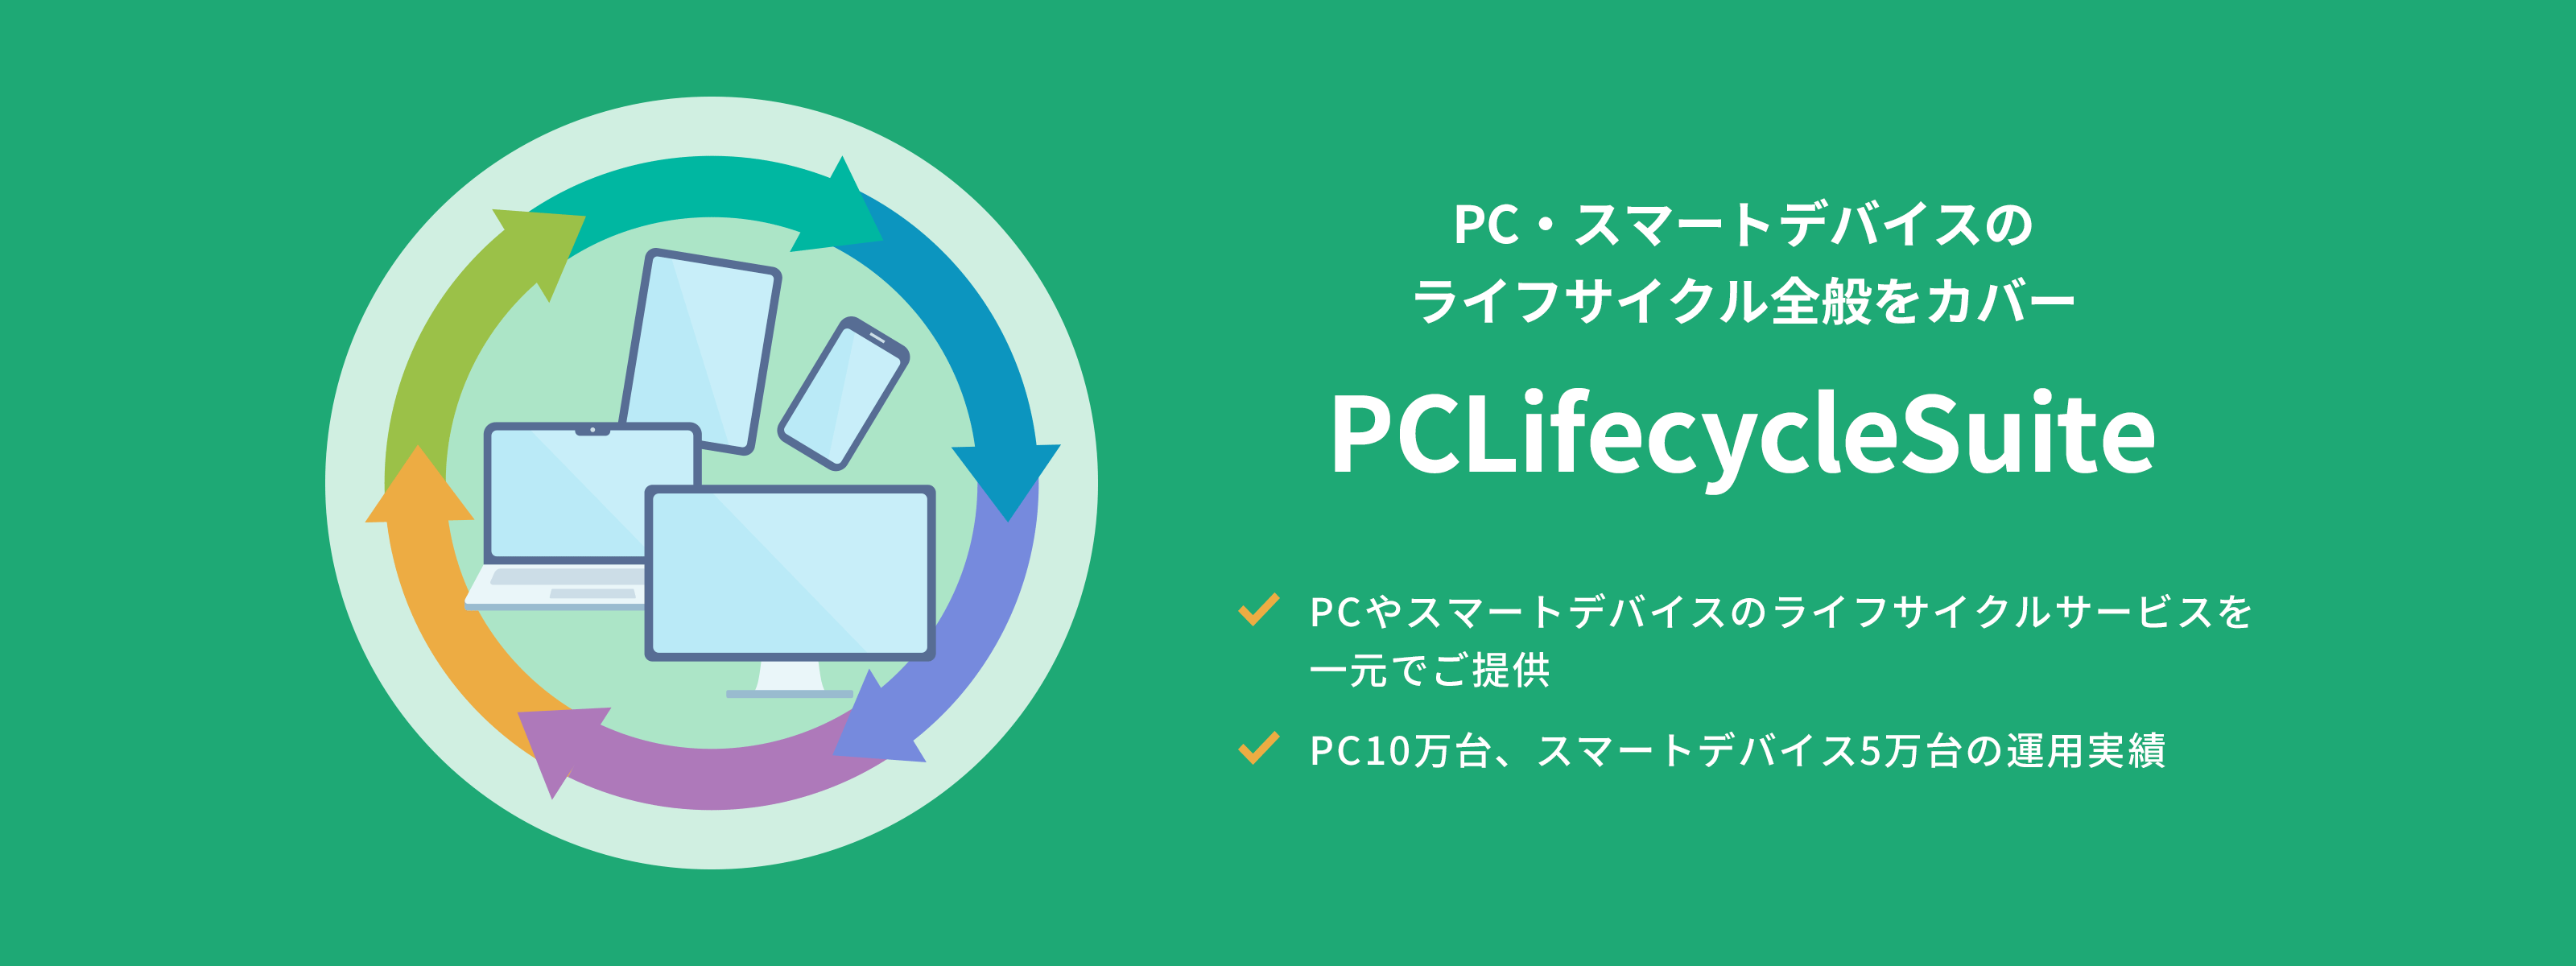 PC・スマートデバイスのライフサイクル全般をカバー PCLifeCycleSuite PCやスマートデバイスのライフサイクルサービスを一元でご提供 PC10万台、スマートデバイス5万台の運用実績